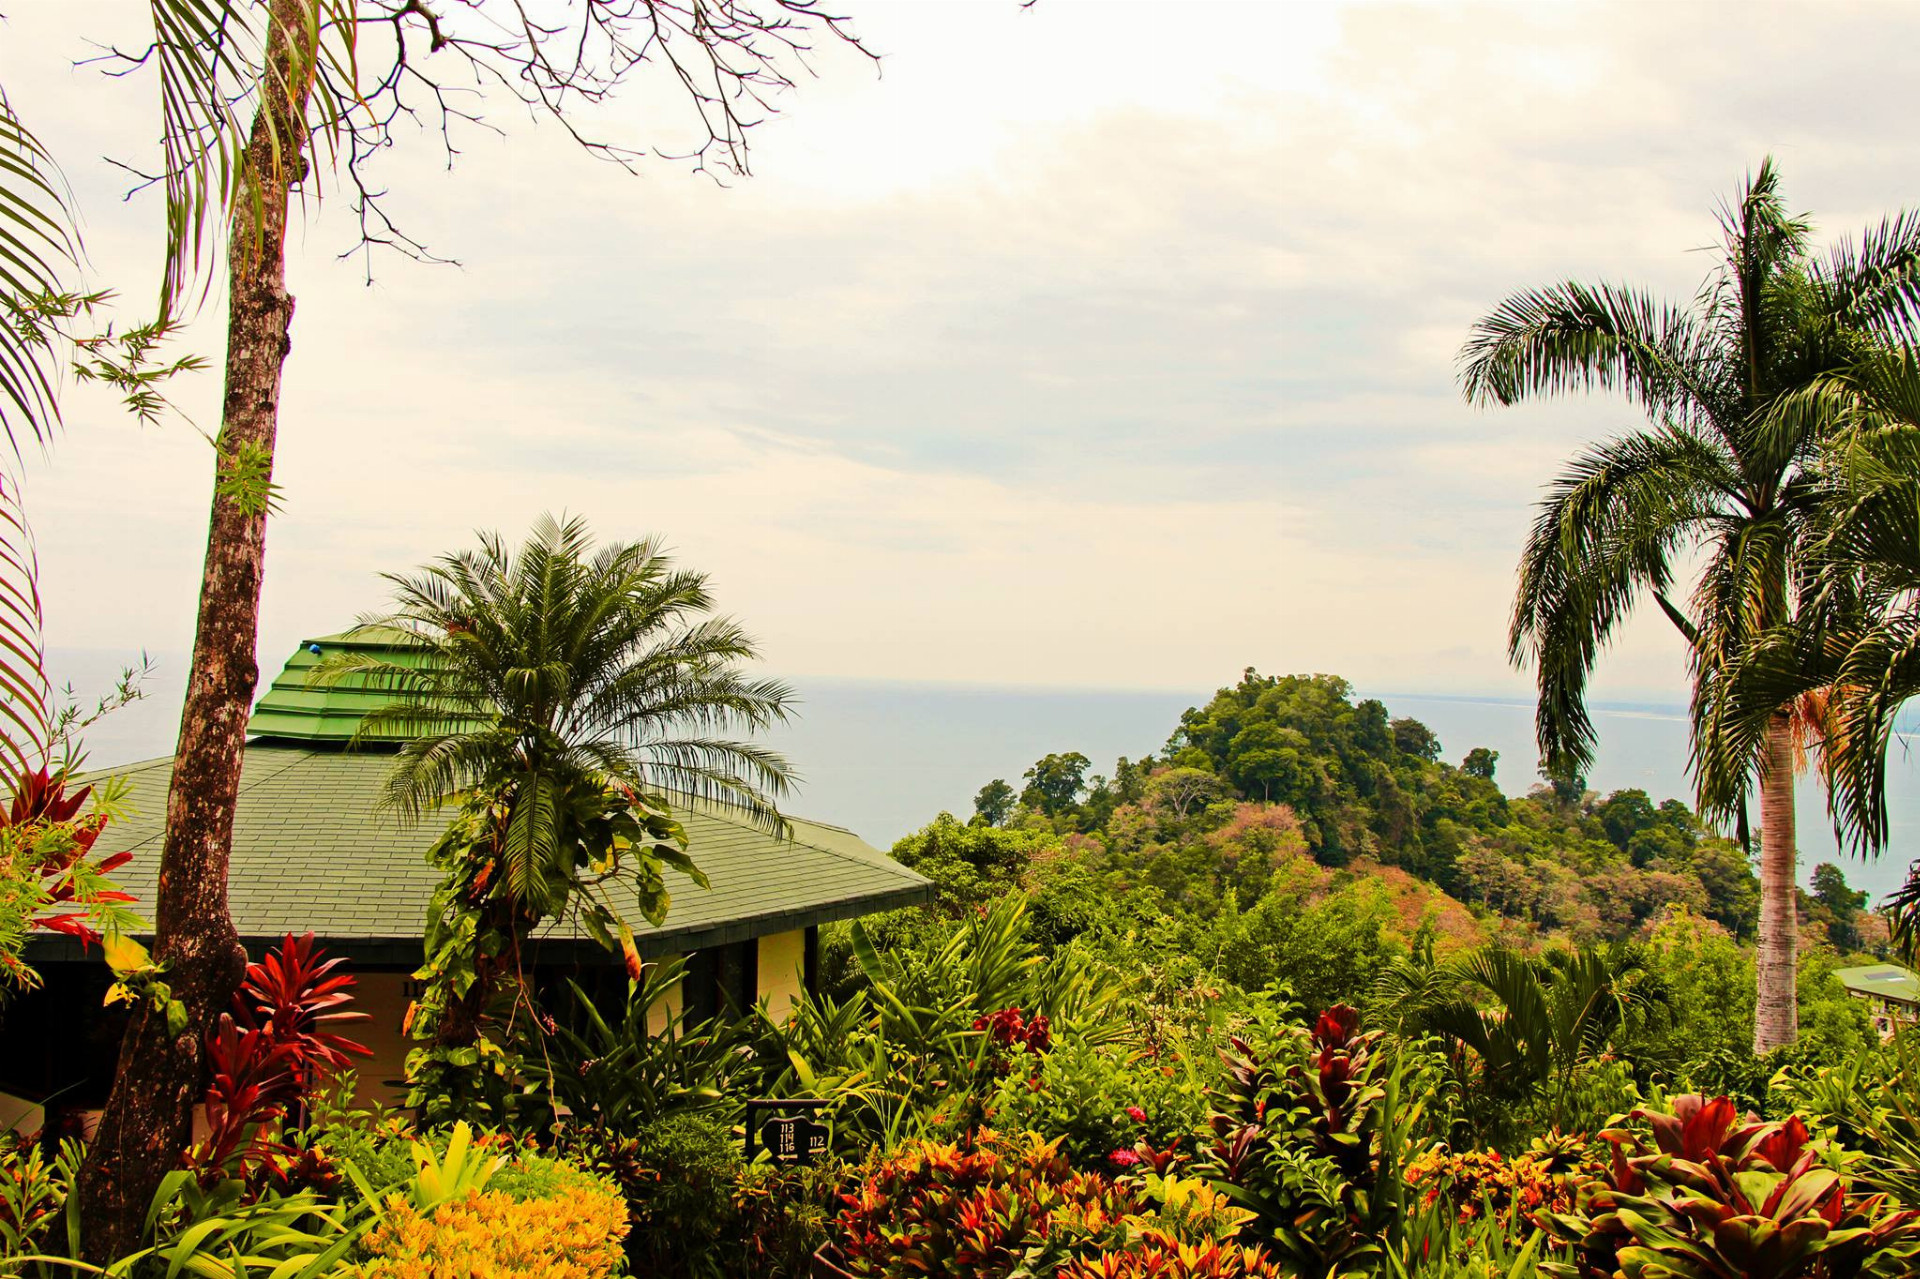 Tento hotel má viac ako 2 tisíc recenzií na Tripadvisore a hodnotenie 5 hviezdičiek. Drvivá väčšina cestovateľov ho označila za excelentný. Je to ideálne miesto pre rodiny aj skupinu priateľov, nachádza sa v tropickej džungli so súkromnou botanickou záhradou. 
